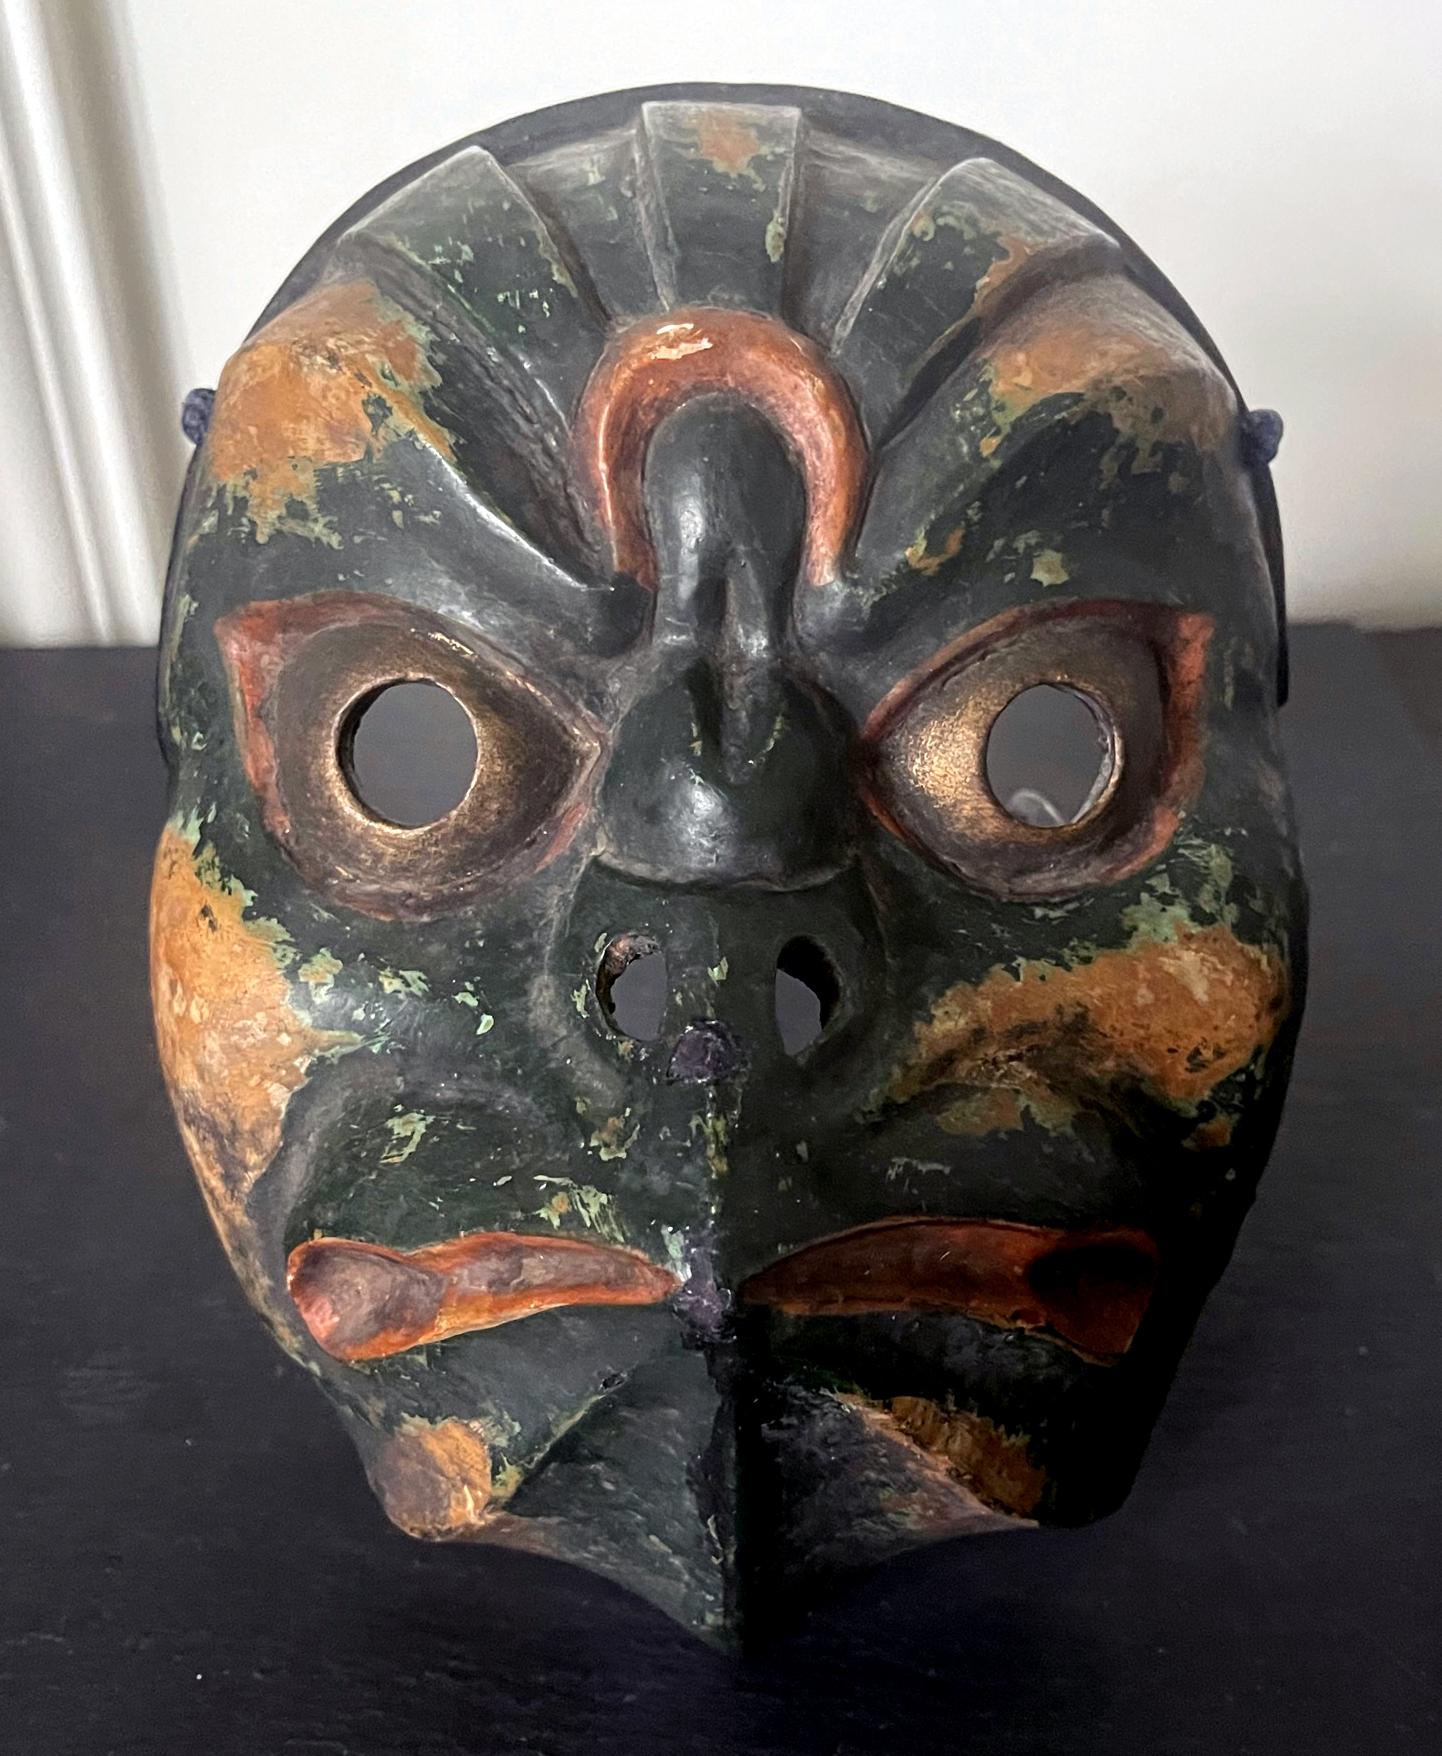 Eine auffällige japanische Holzmaske mit polychromer Bemalung und Lackoberfläche. Diese seltene Maske stammt aus der Edo-Zeit (erste Hälfte des 19. Jahrhunderts und möglicherweise früher). Die Maske war für eine Bugaku-Aufführung bestimmt (ein